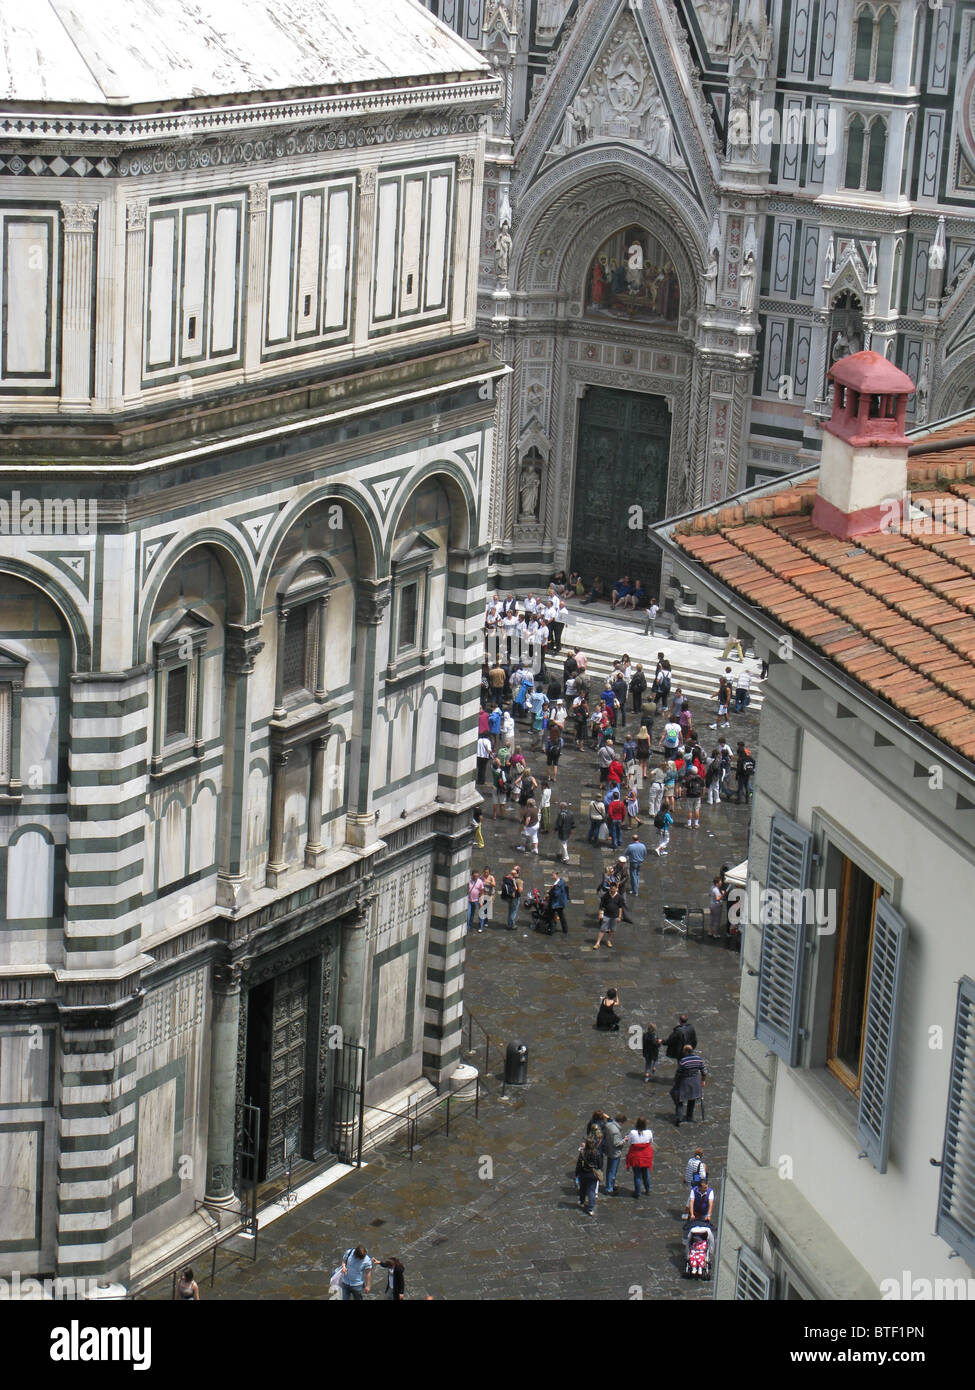 Basilica di Santa Maria del Fiore, Giotto Campanile and Baptistry, Piazza San Giovanni, Florence, Tuscany, Italy Stock Photo